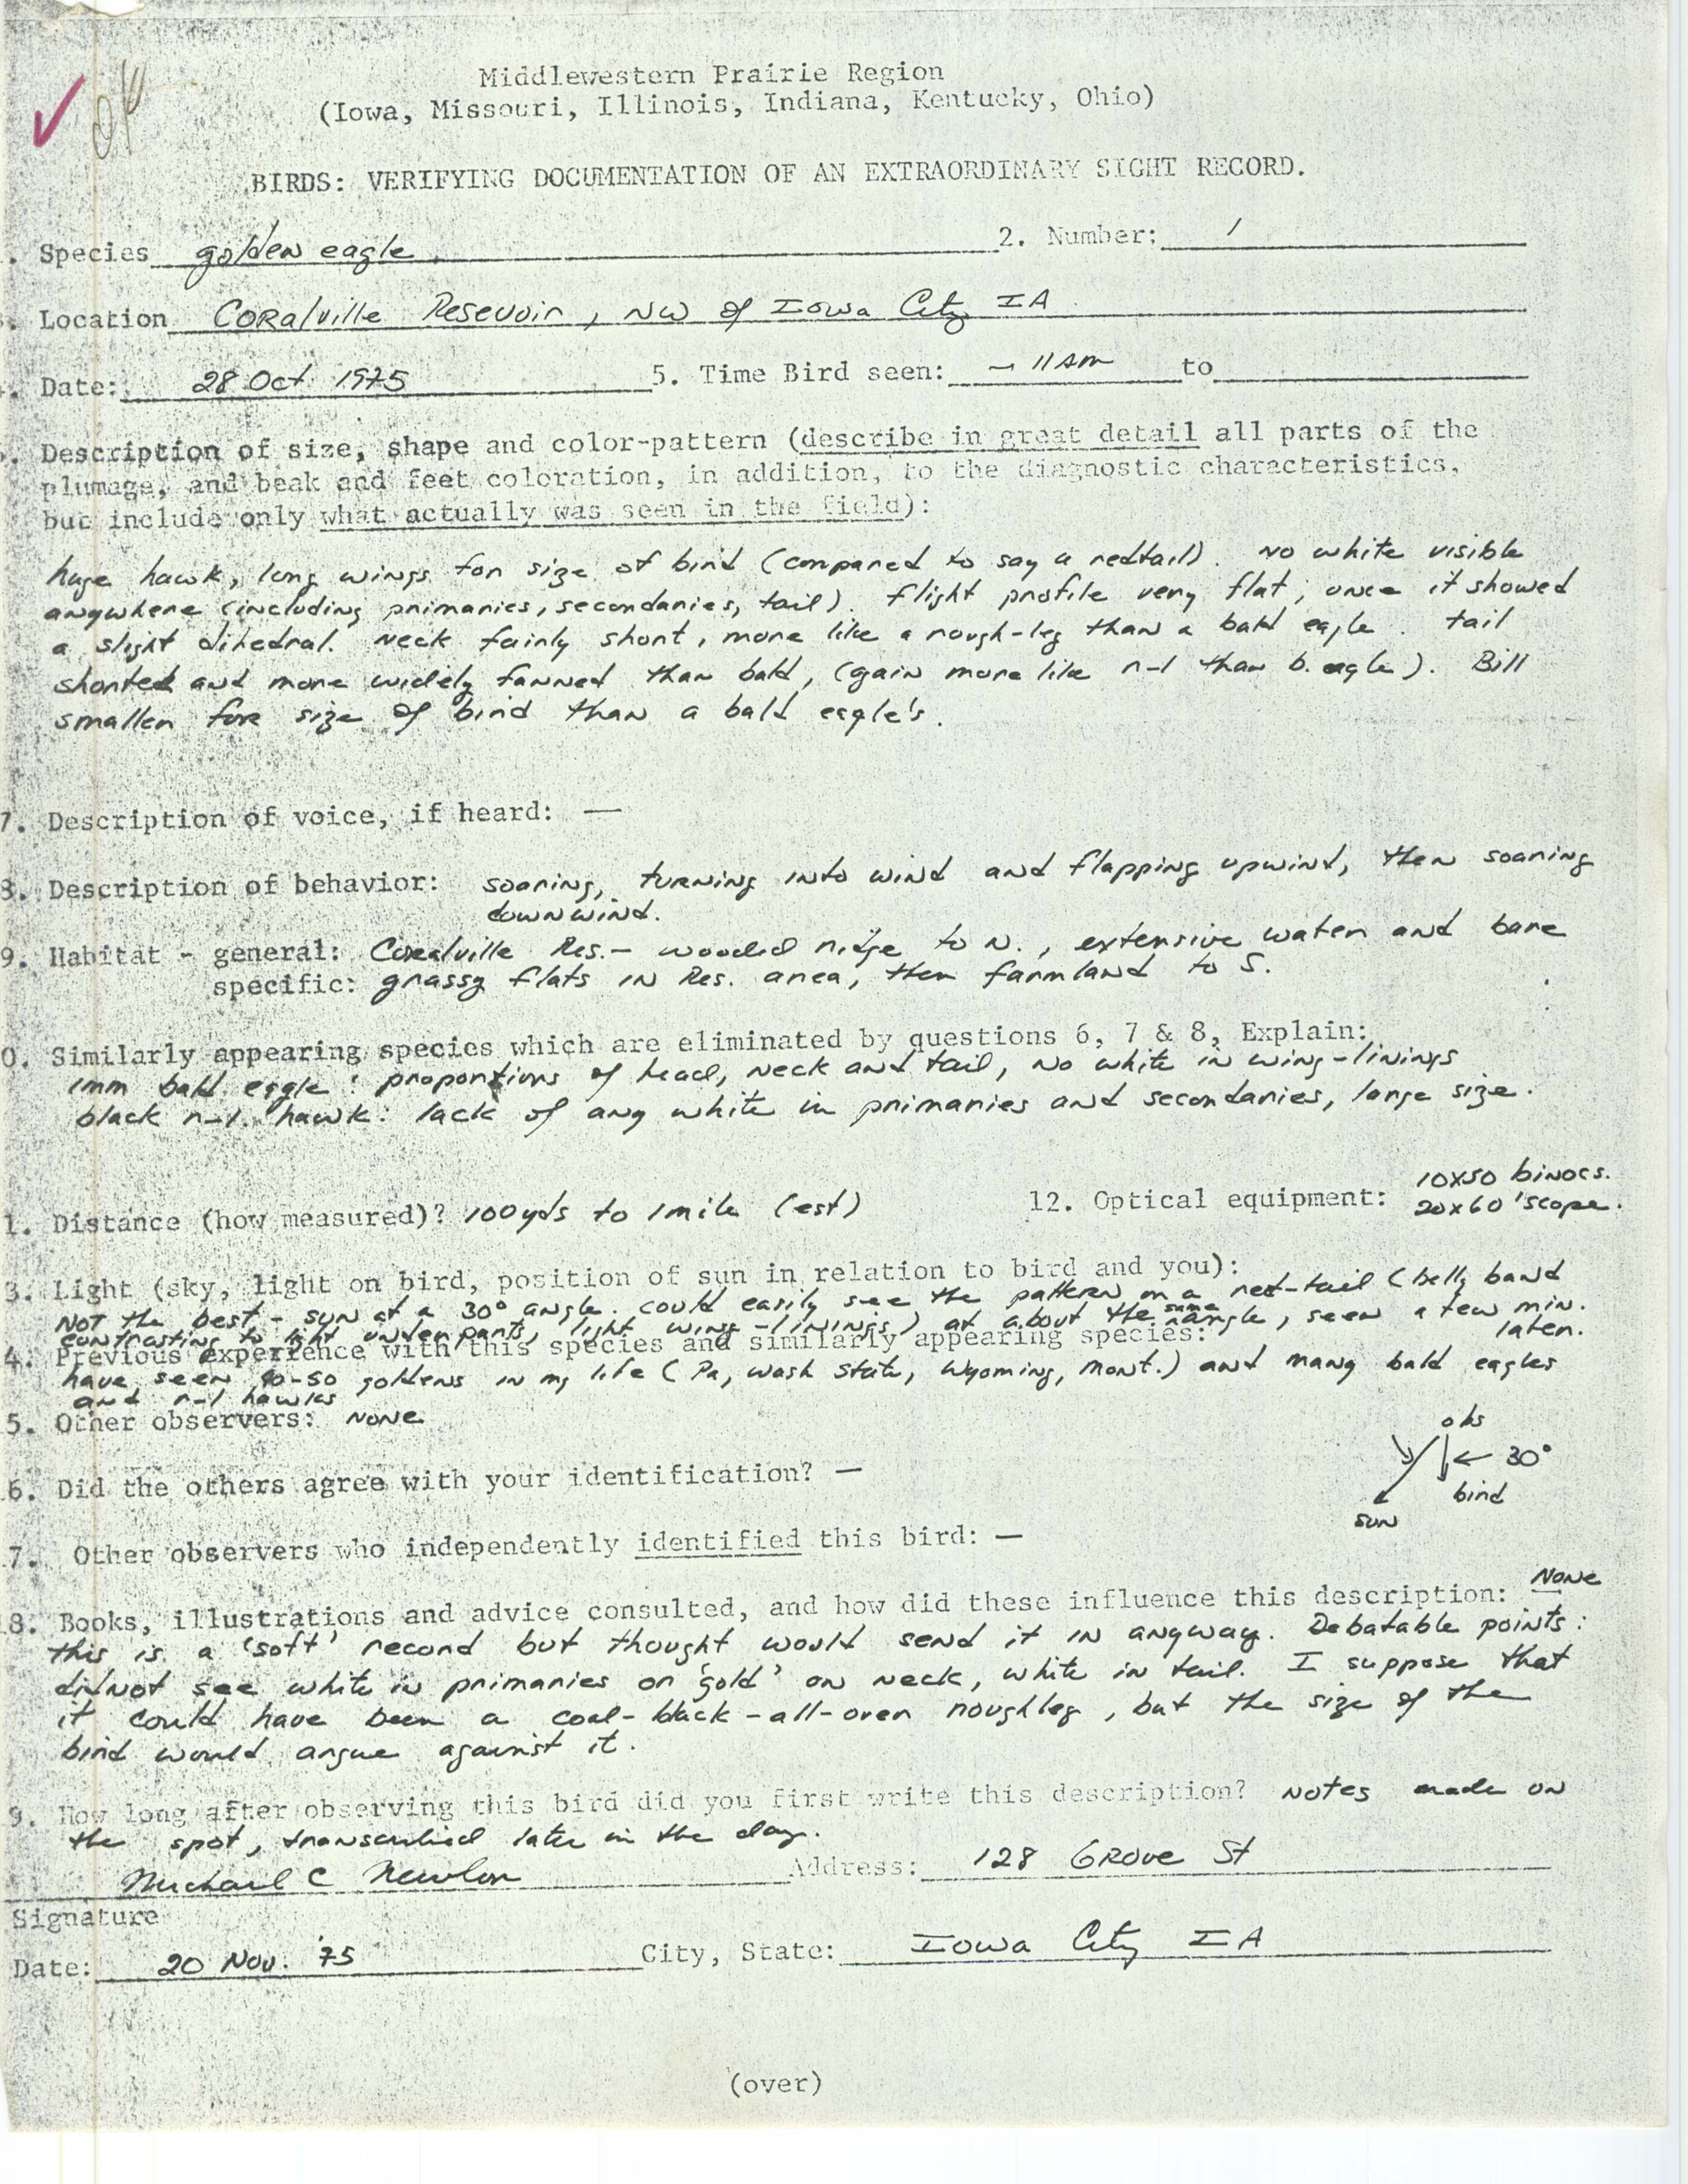 Rare bird documentation form for Golden Eagle at Coralville Reservoir, 1975